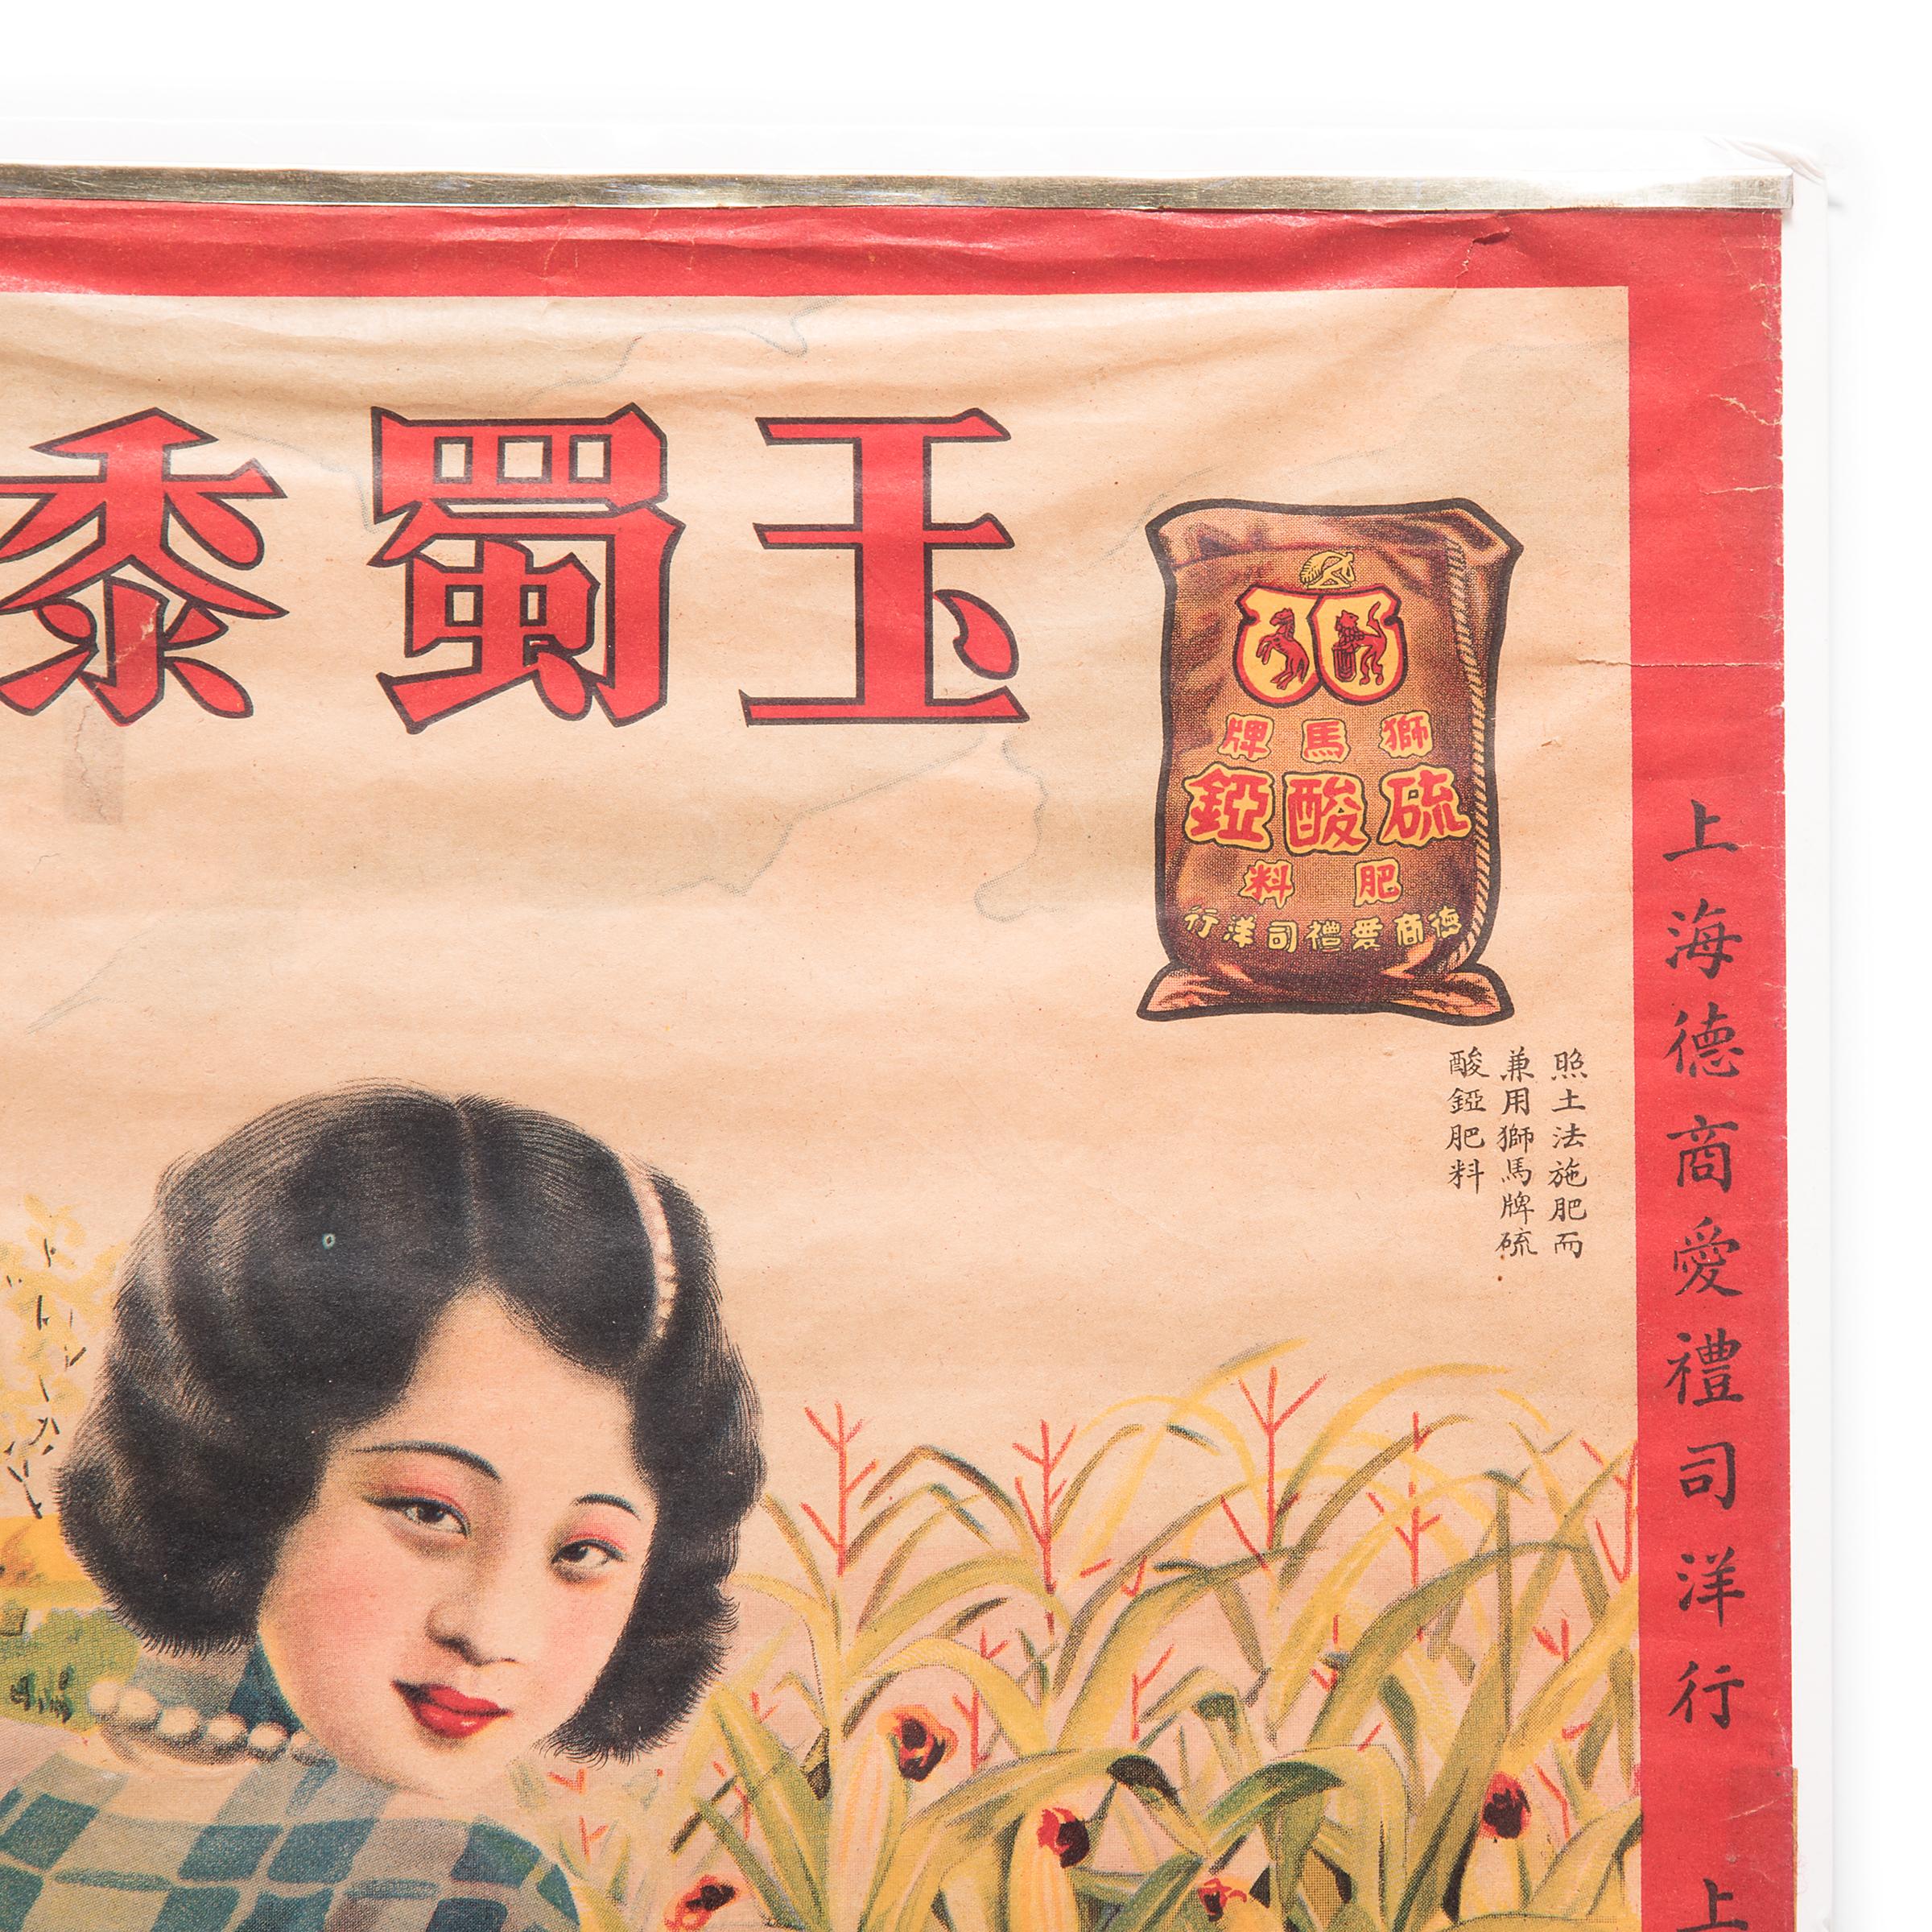 Chinois Affiche publicitaire vintage chinoise d'un fertilizer en vente